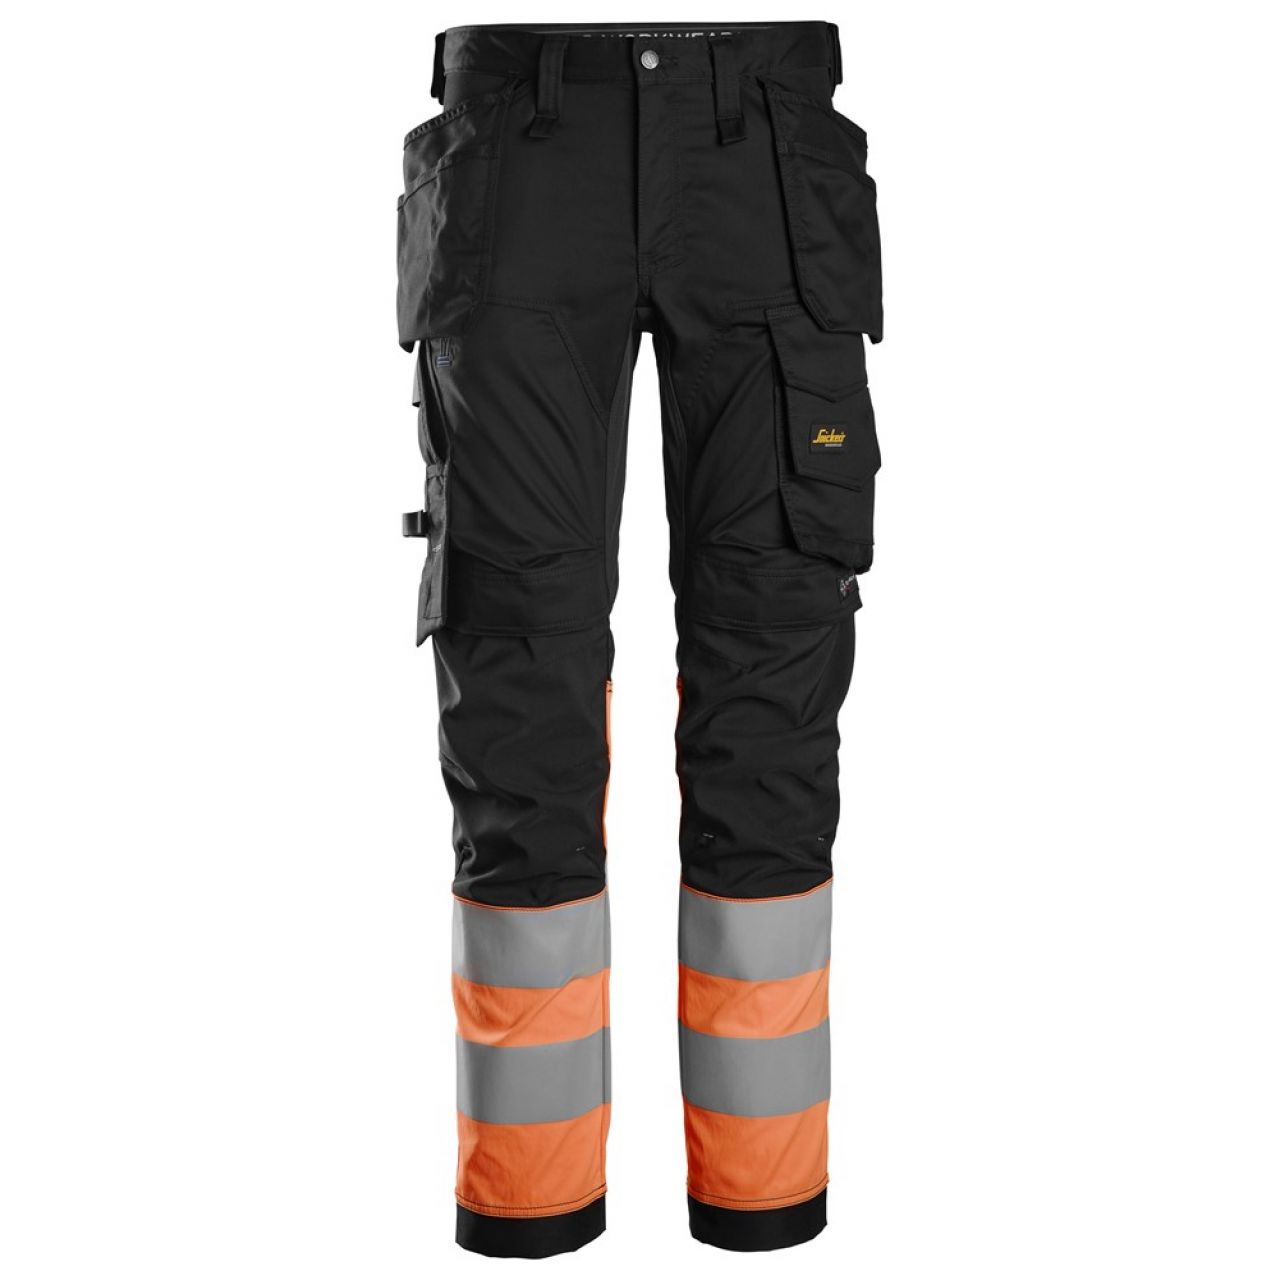 6234 Pantalones largos de trabajo elásticos de alta visibilidad clase 1 con bolsillos flotantes negro-naranja talla 104